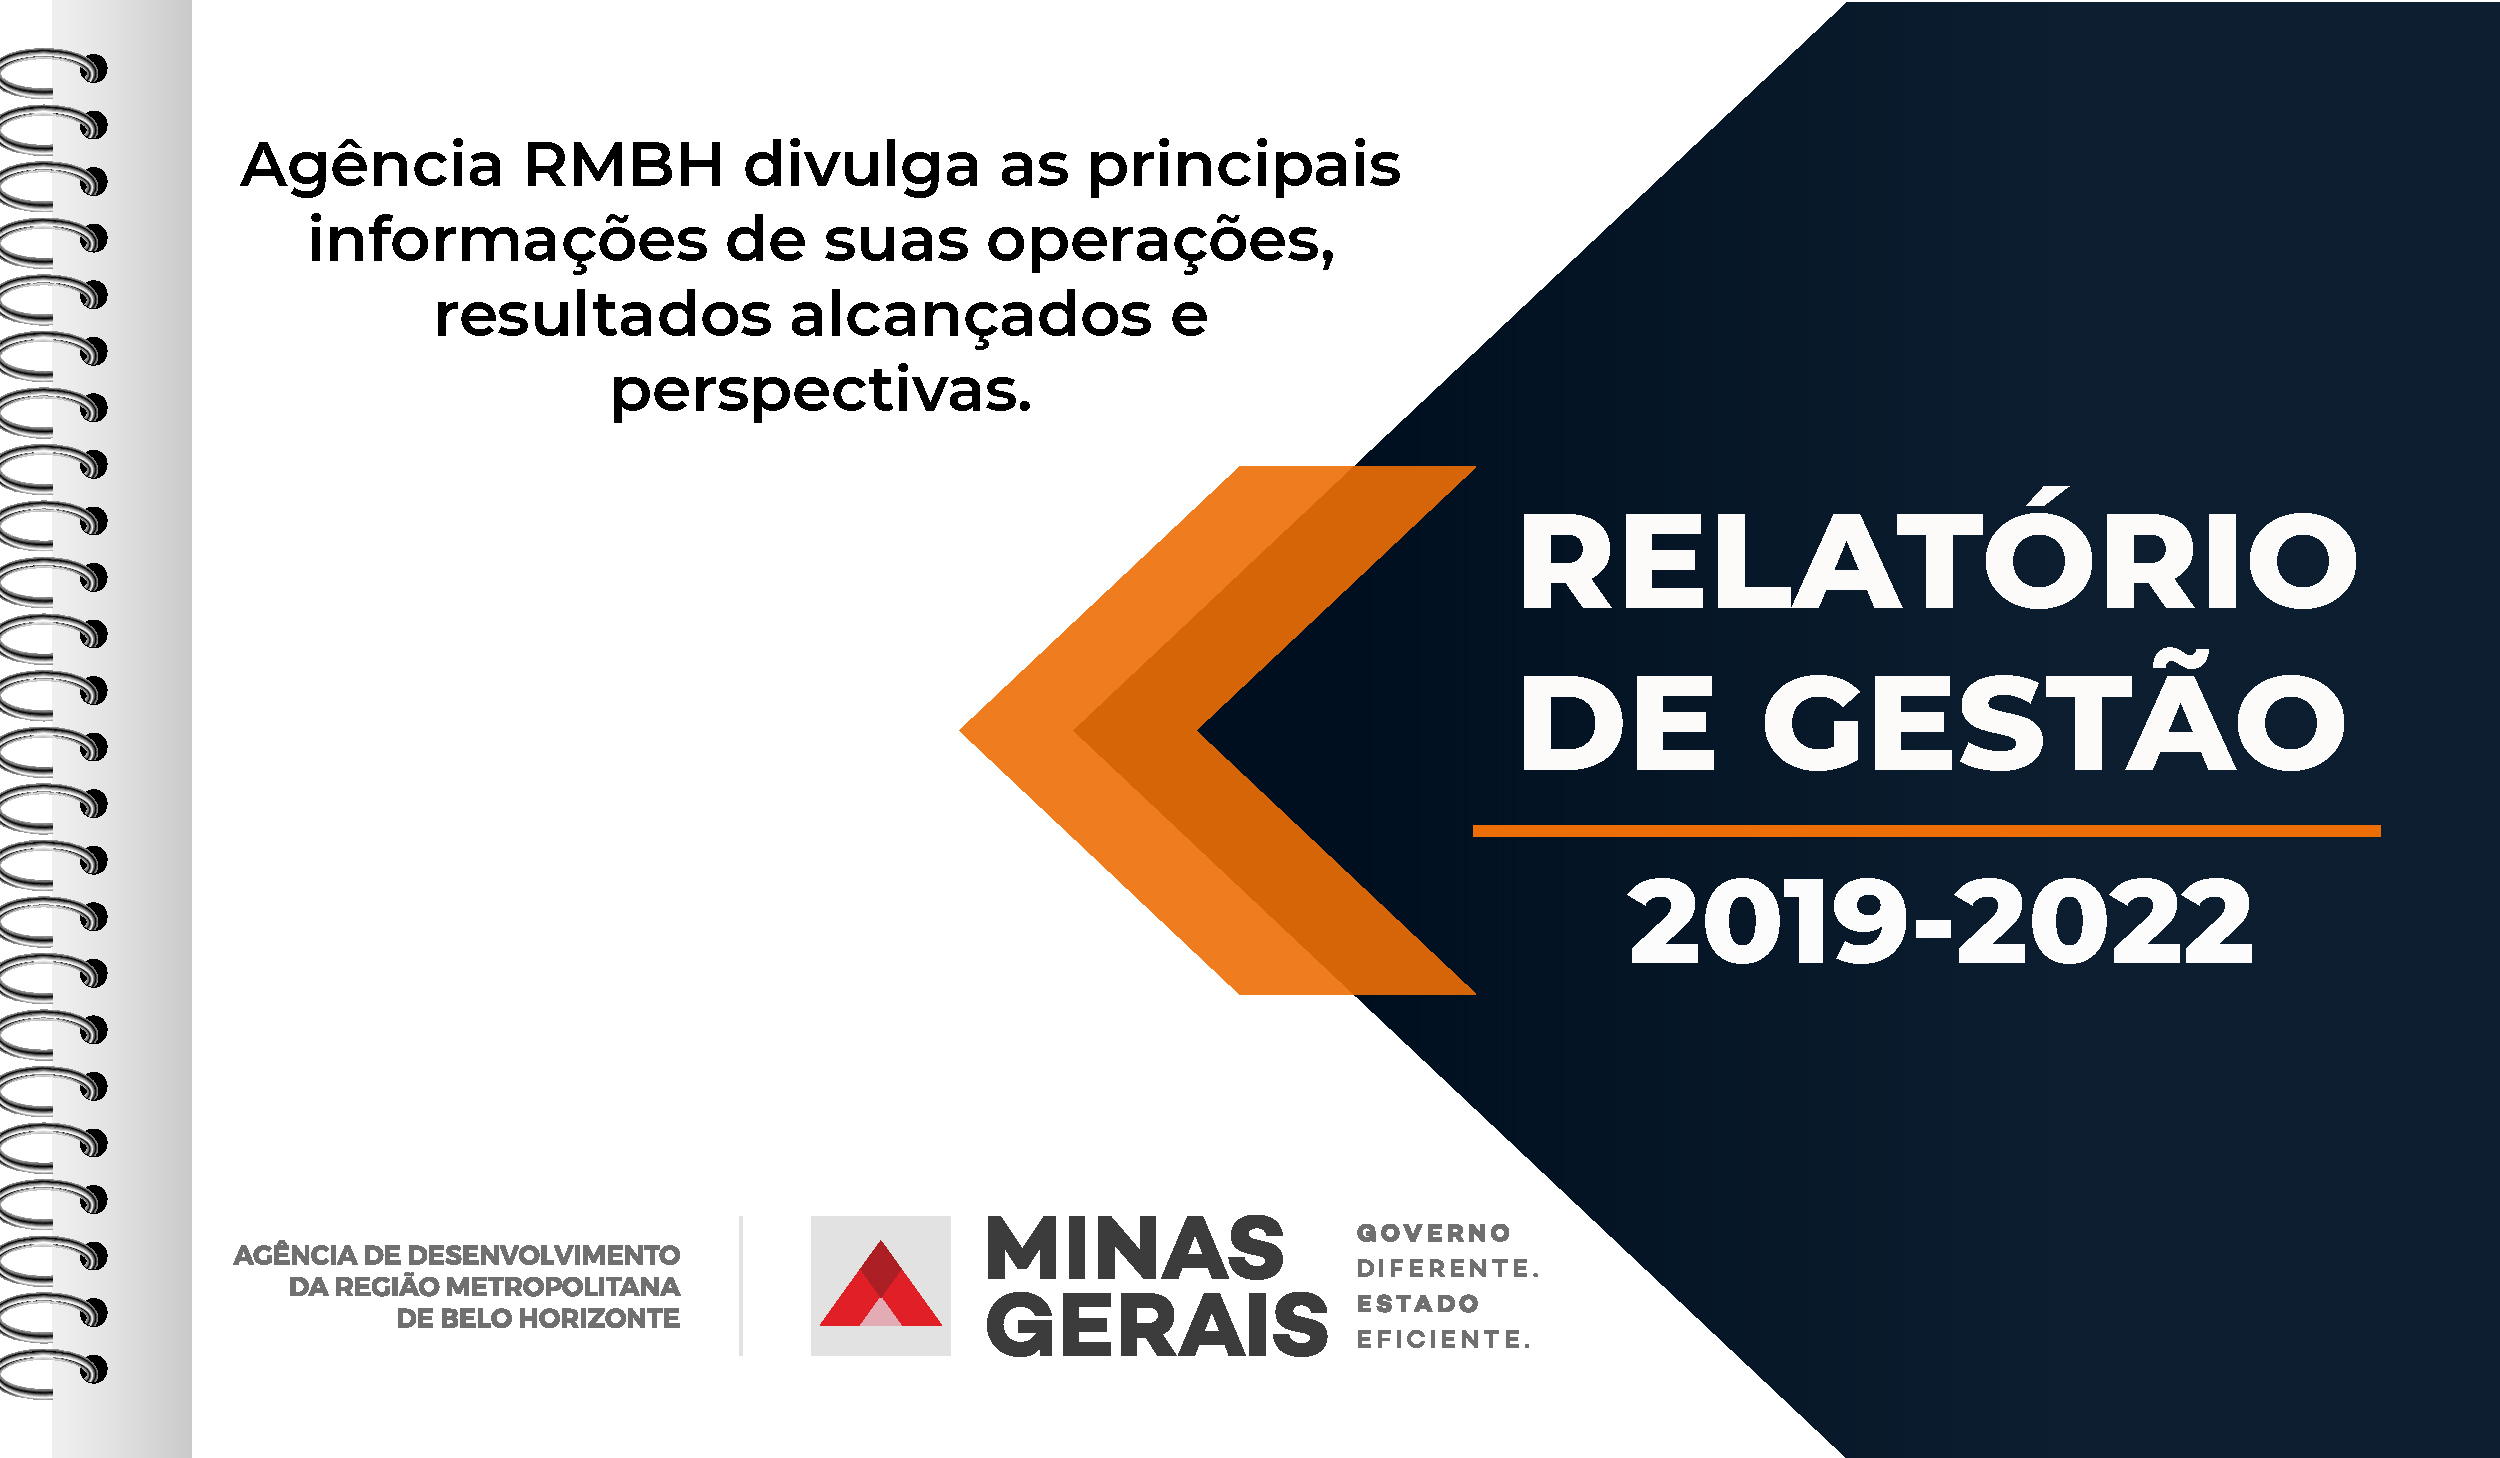 Agência RMBH lança Relatório de Gestão 2019-2022 com avanços na prestação de serviços